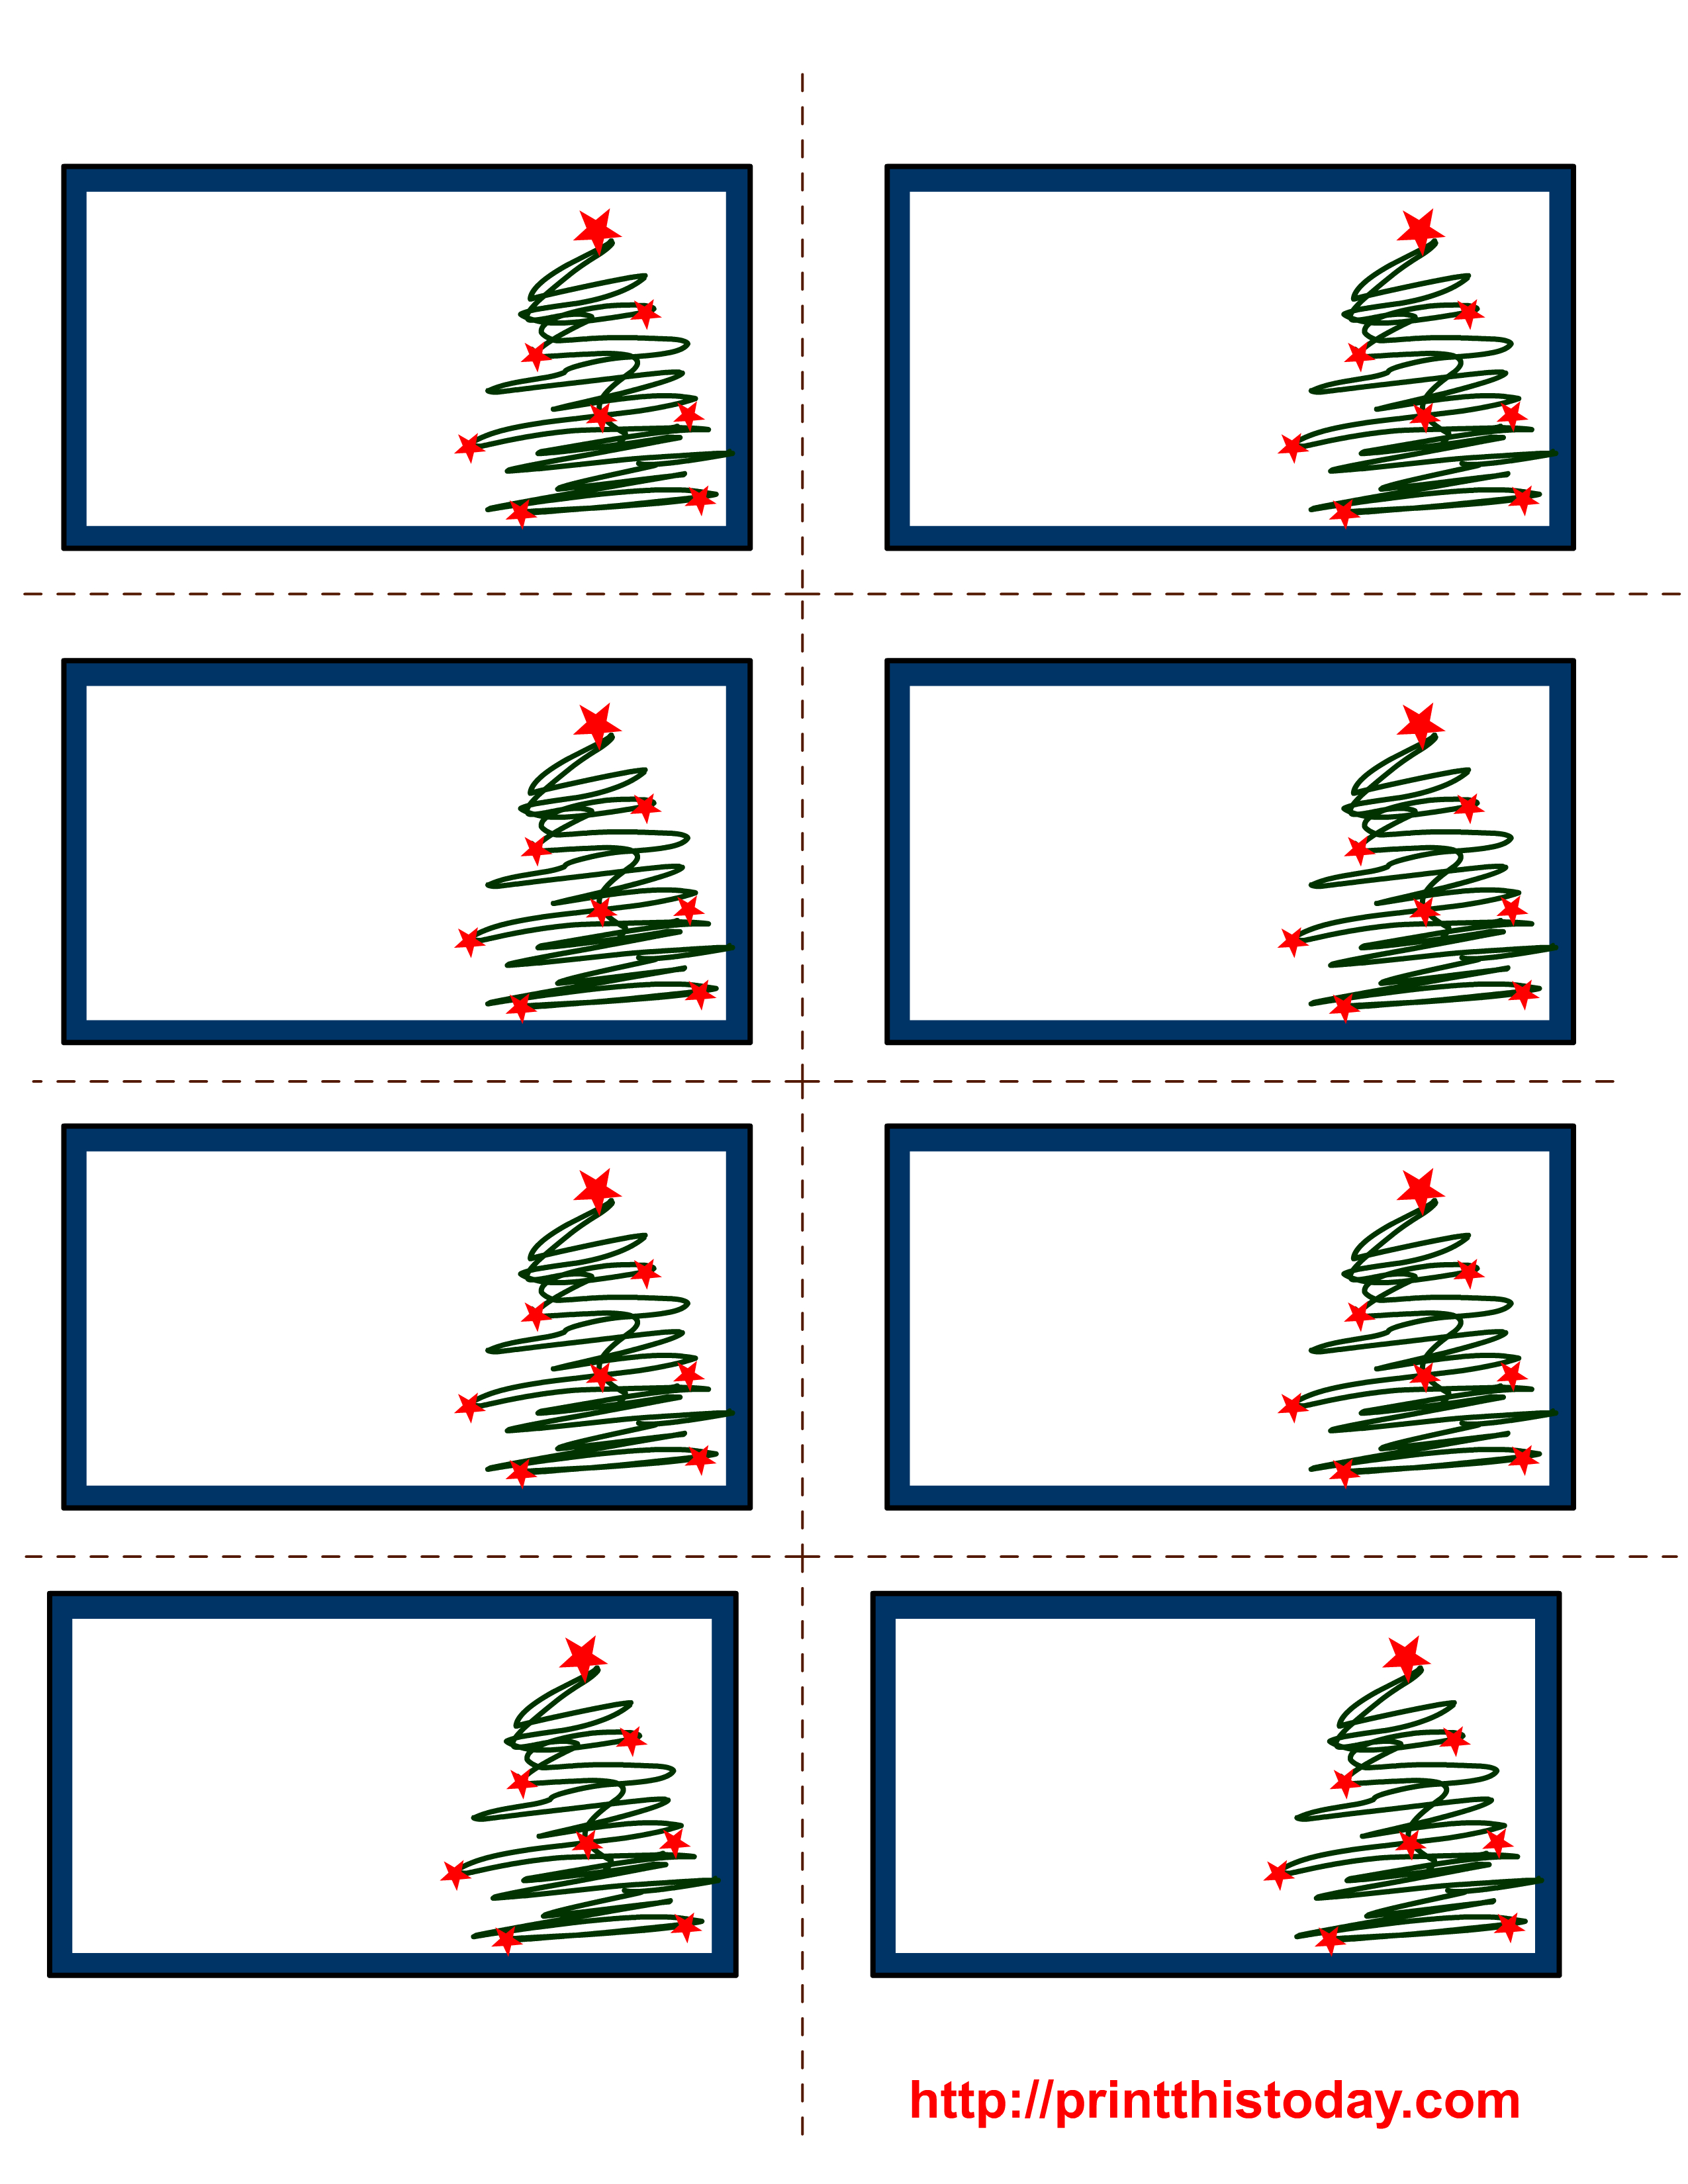 Free Labels Printable | Free Printable Christmas Labels With Trees - Free Printable Christmas Labels